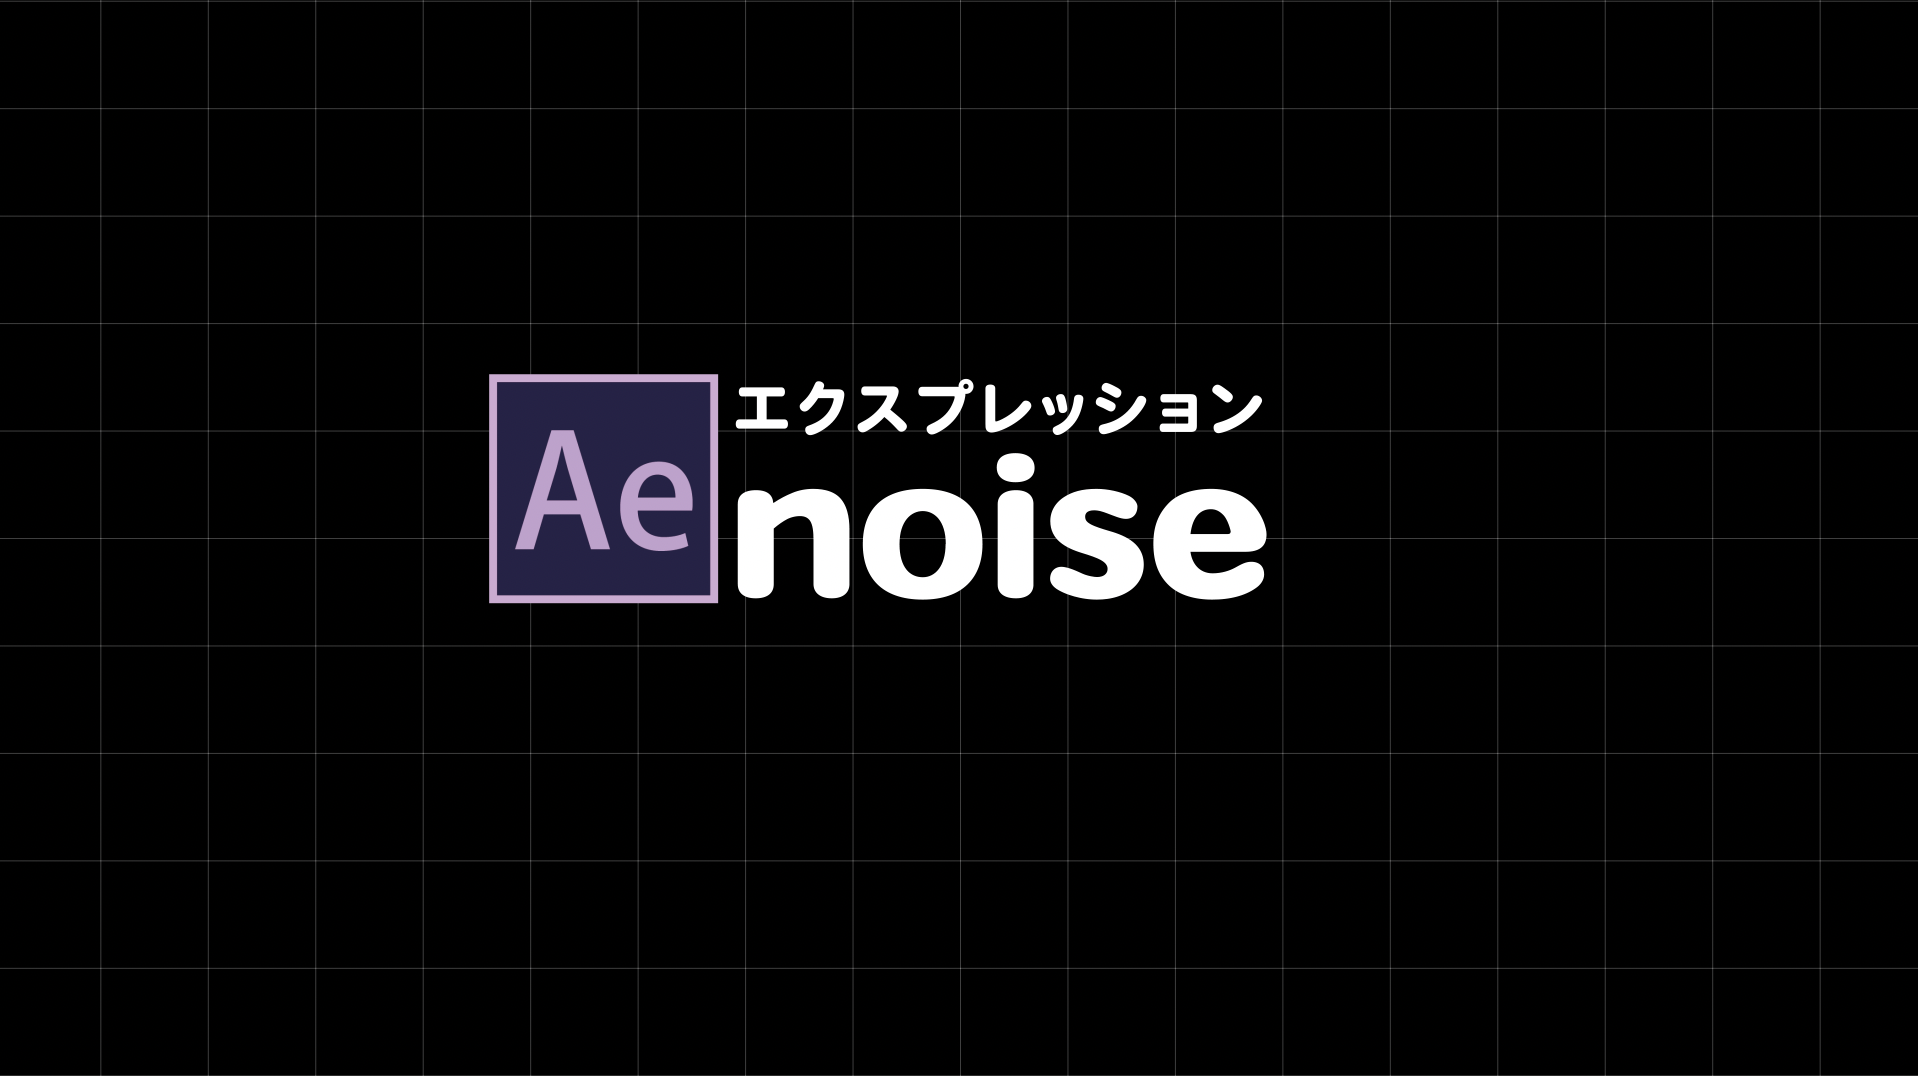 [エクスプレッション]noise